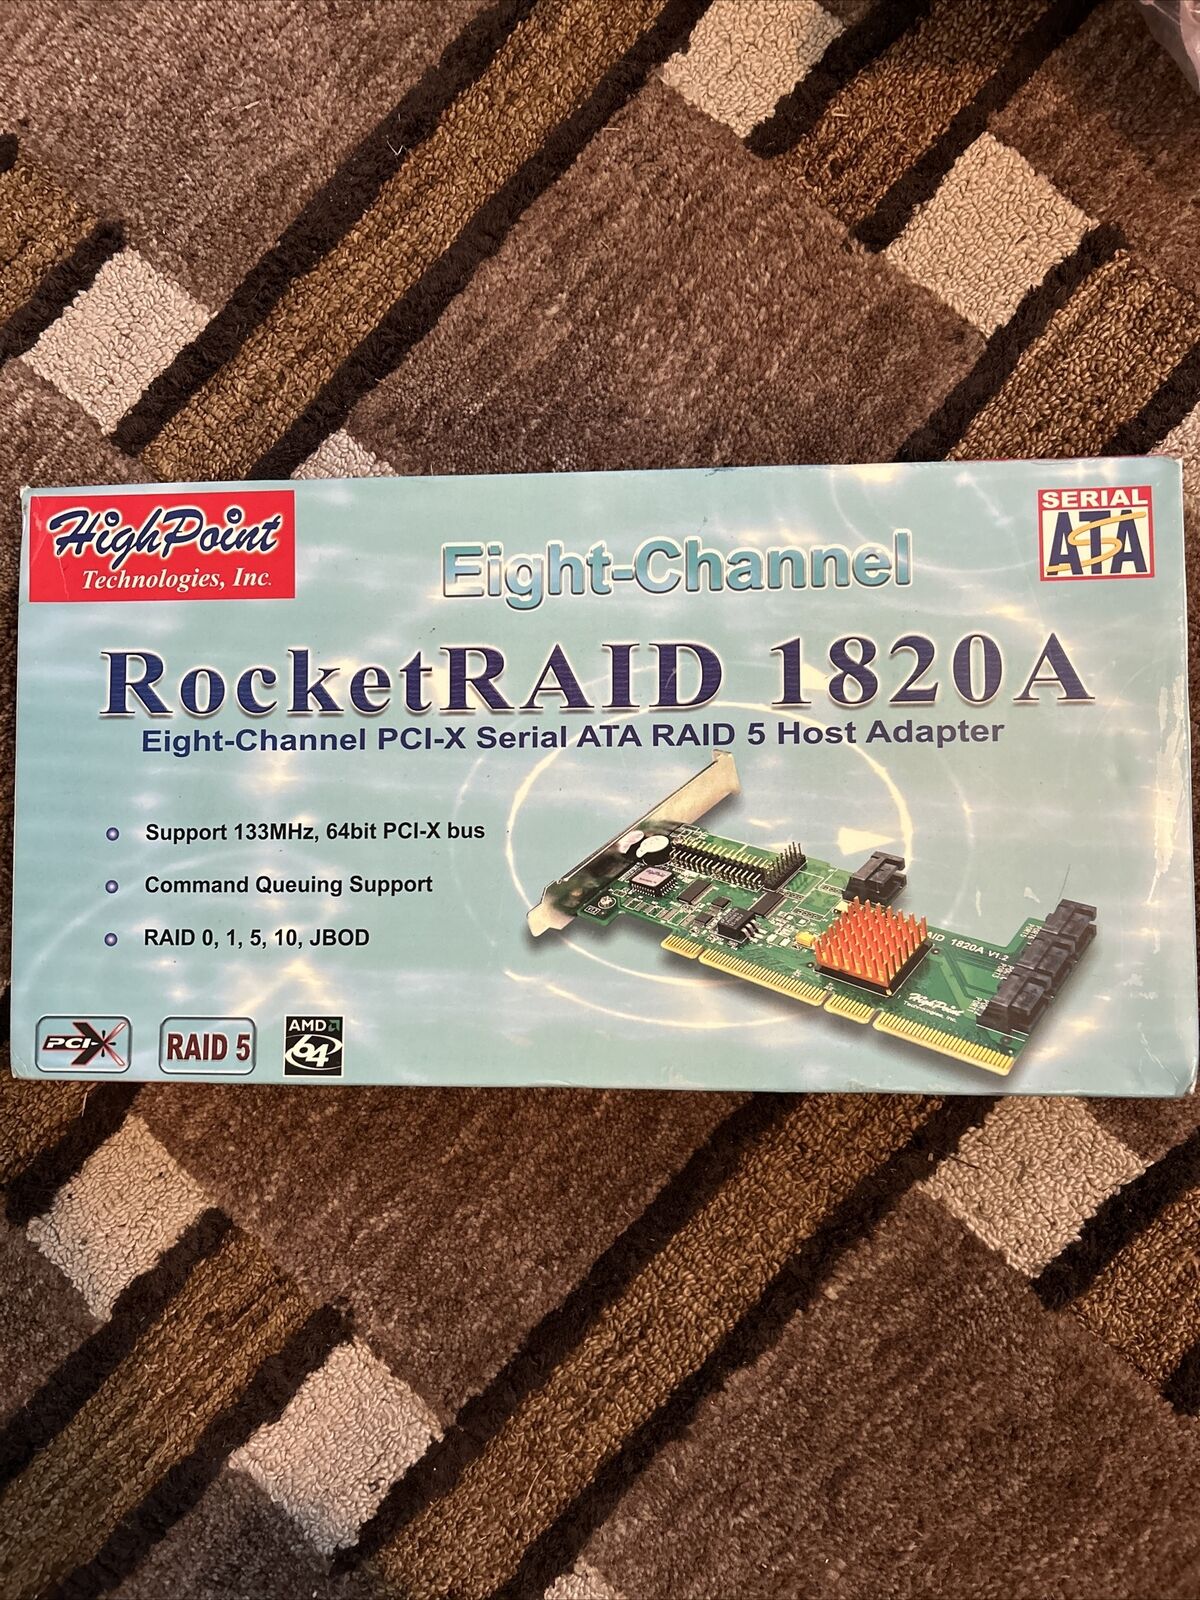 ROCKETRAID HIGH POINT 1820ALF 1820A V1.2 SATA RAID CONTROLLER CARD